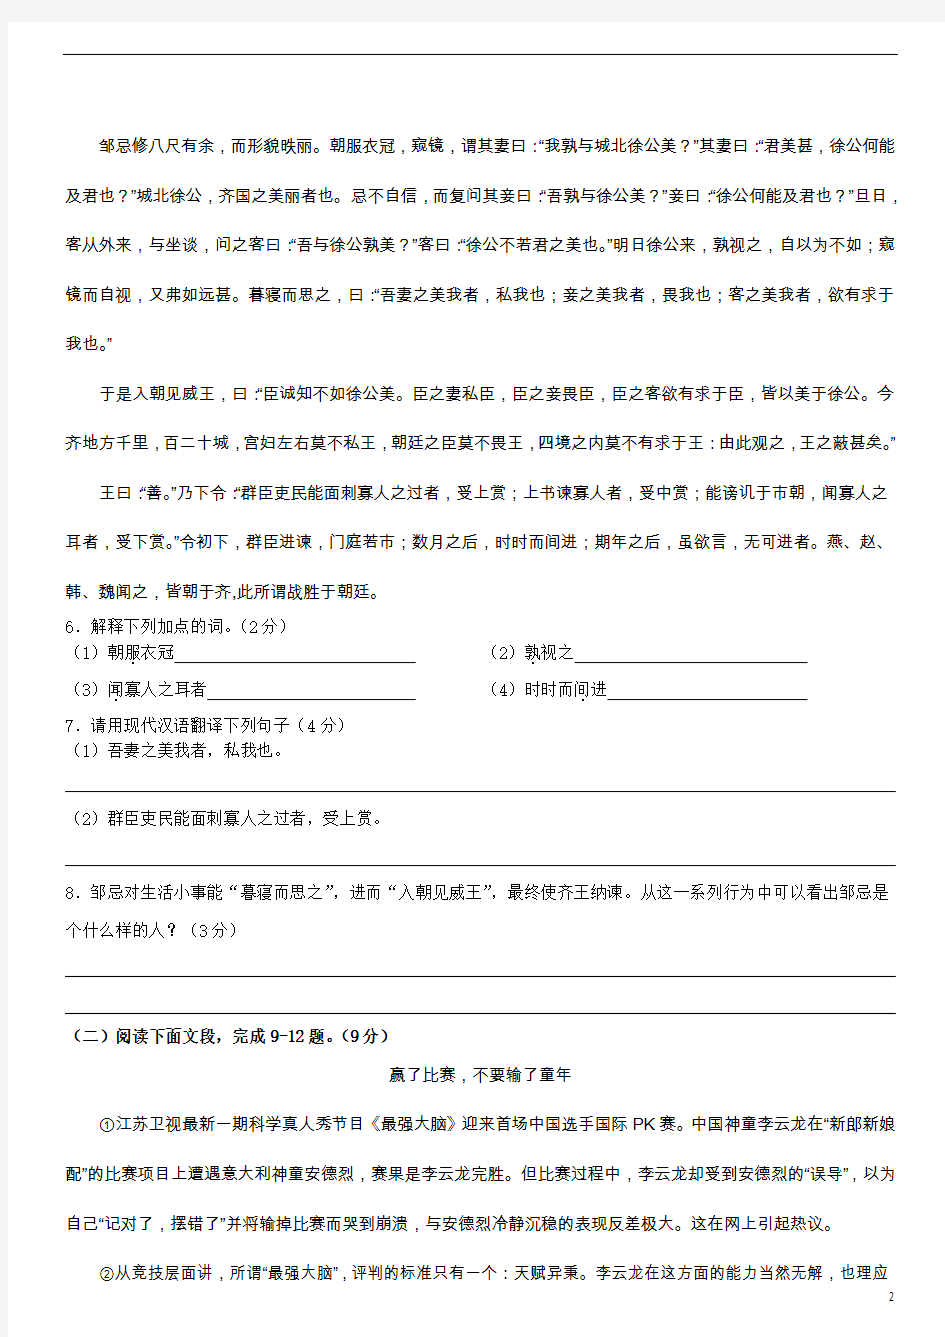 深圳2014年语文中考试卷及阅读答案